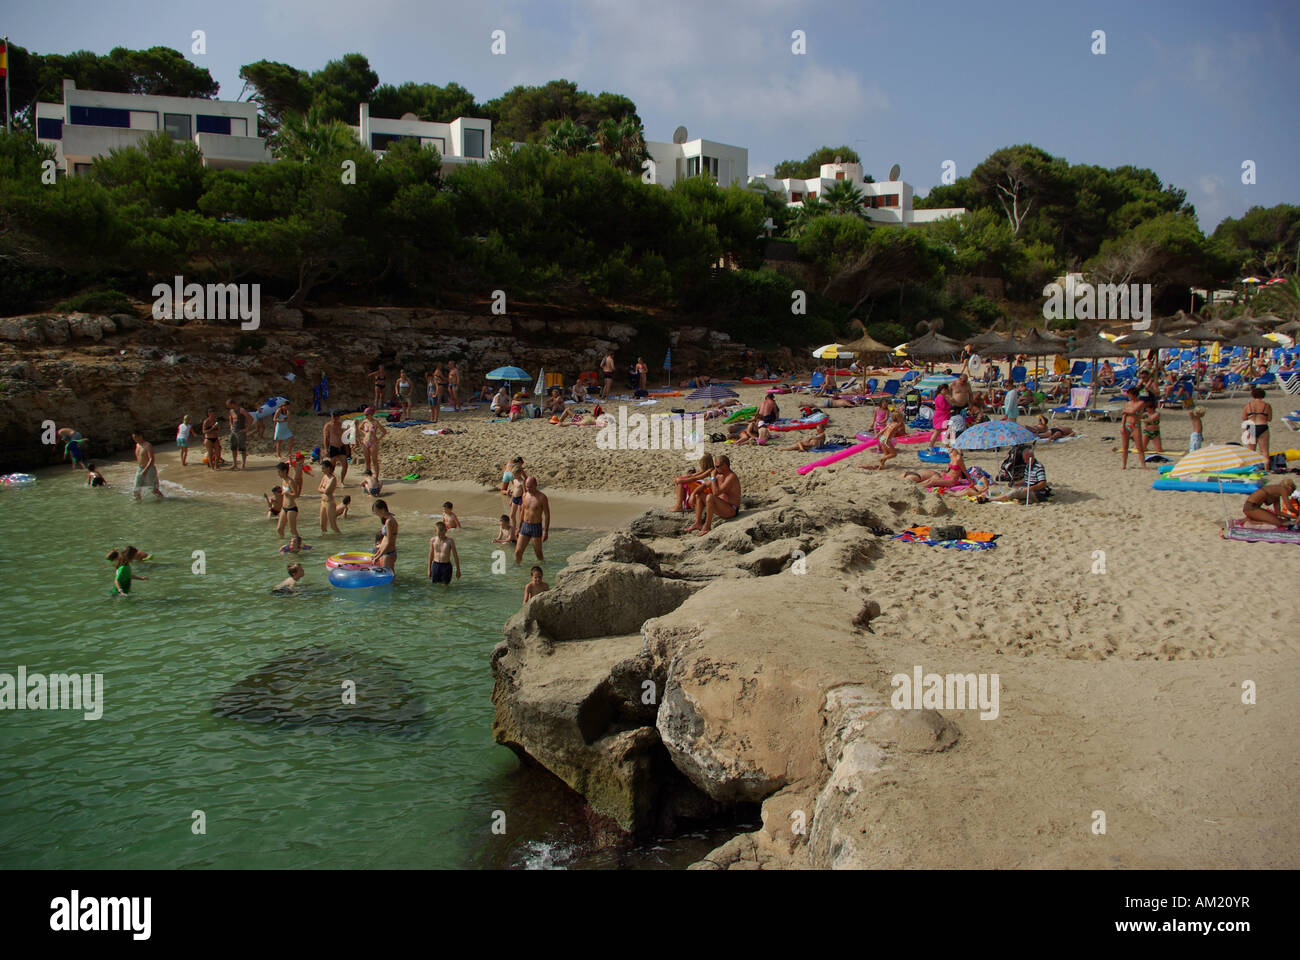 La plage de Cala des Forti, Majorque, Espagne Banque D'Images